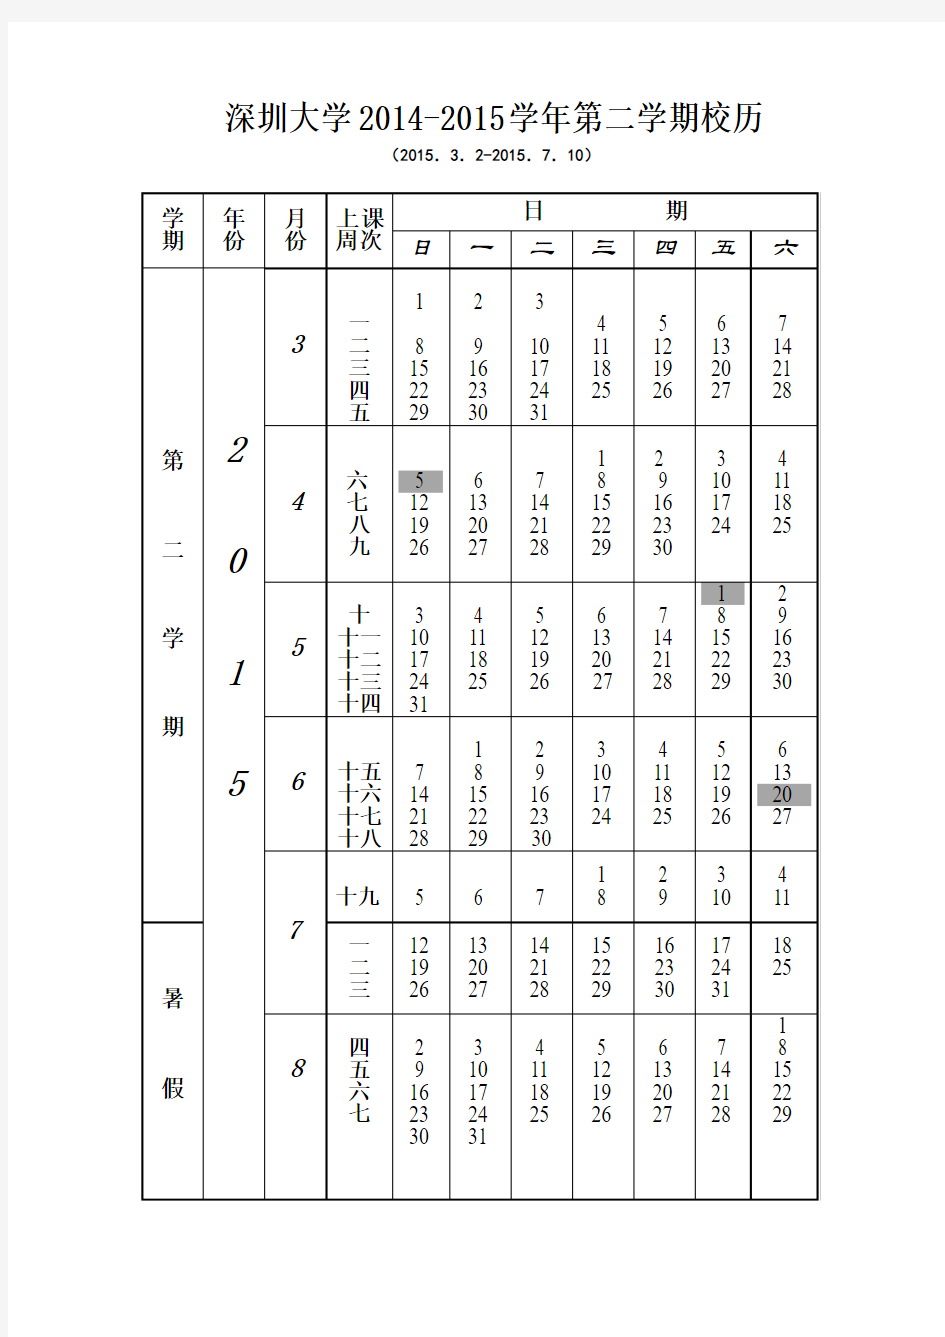 深圳大学2014-2015学年第二学期校历